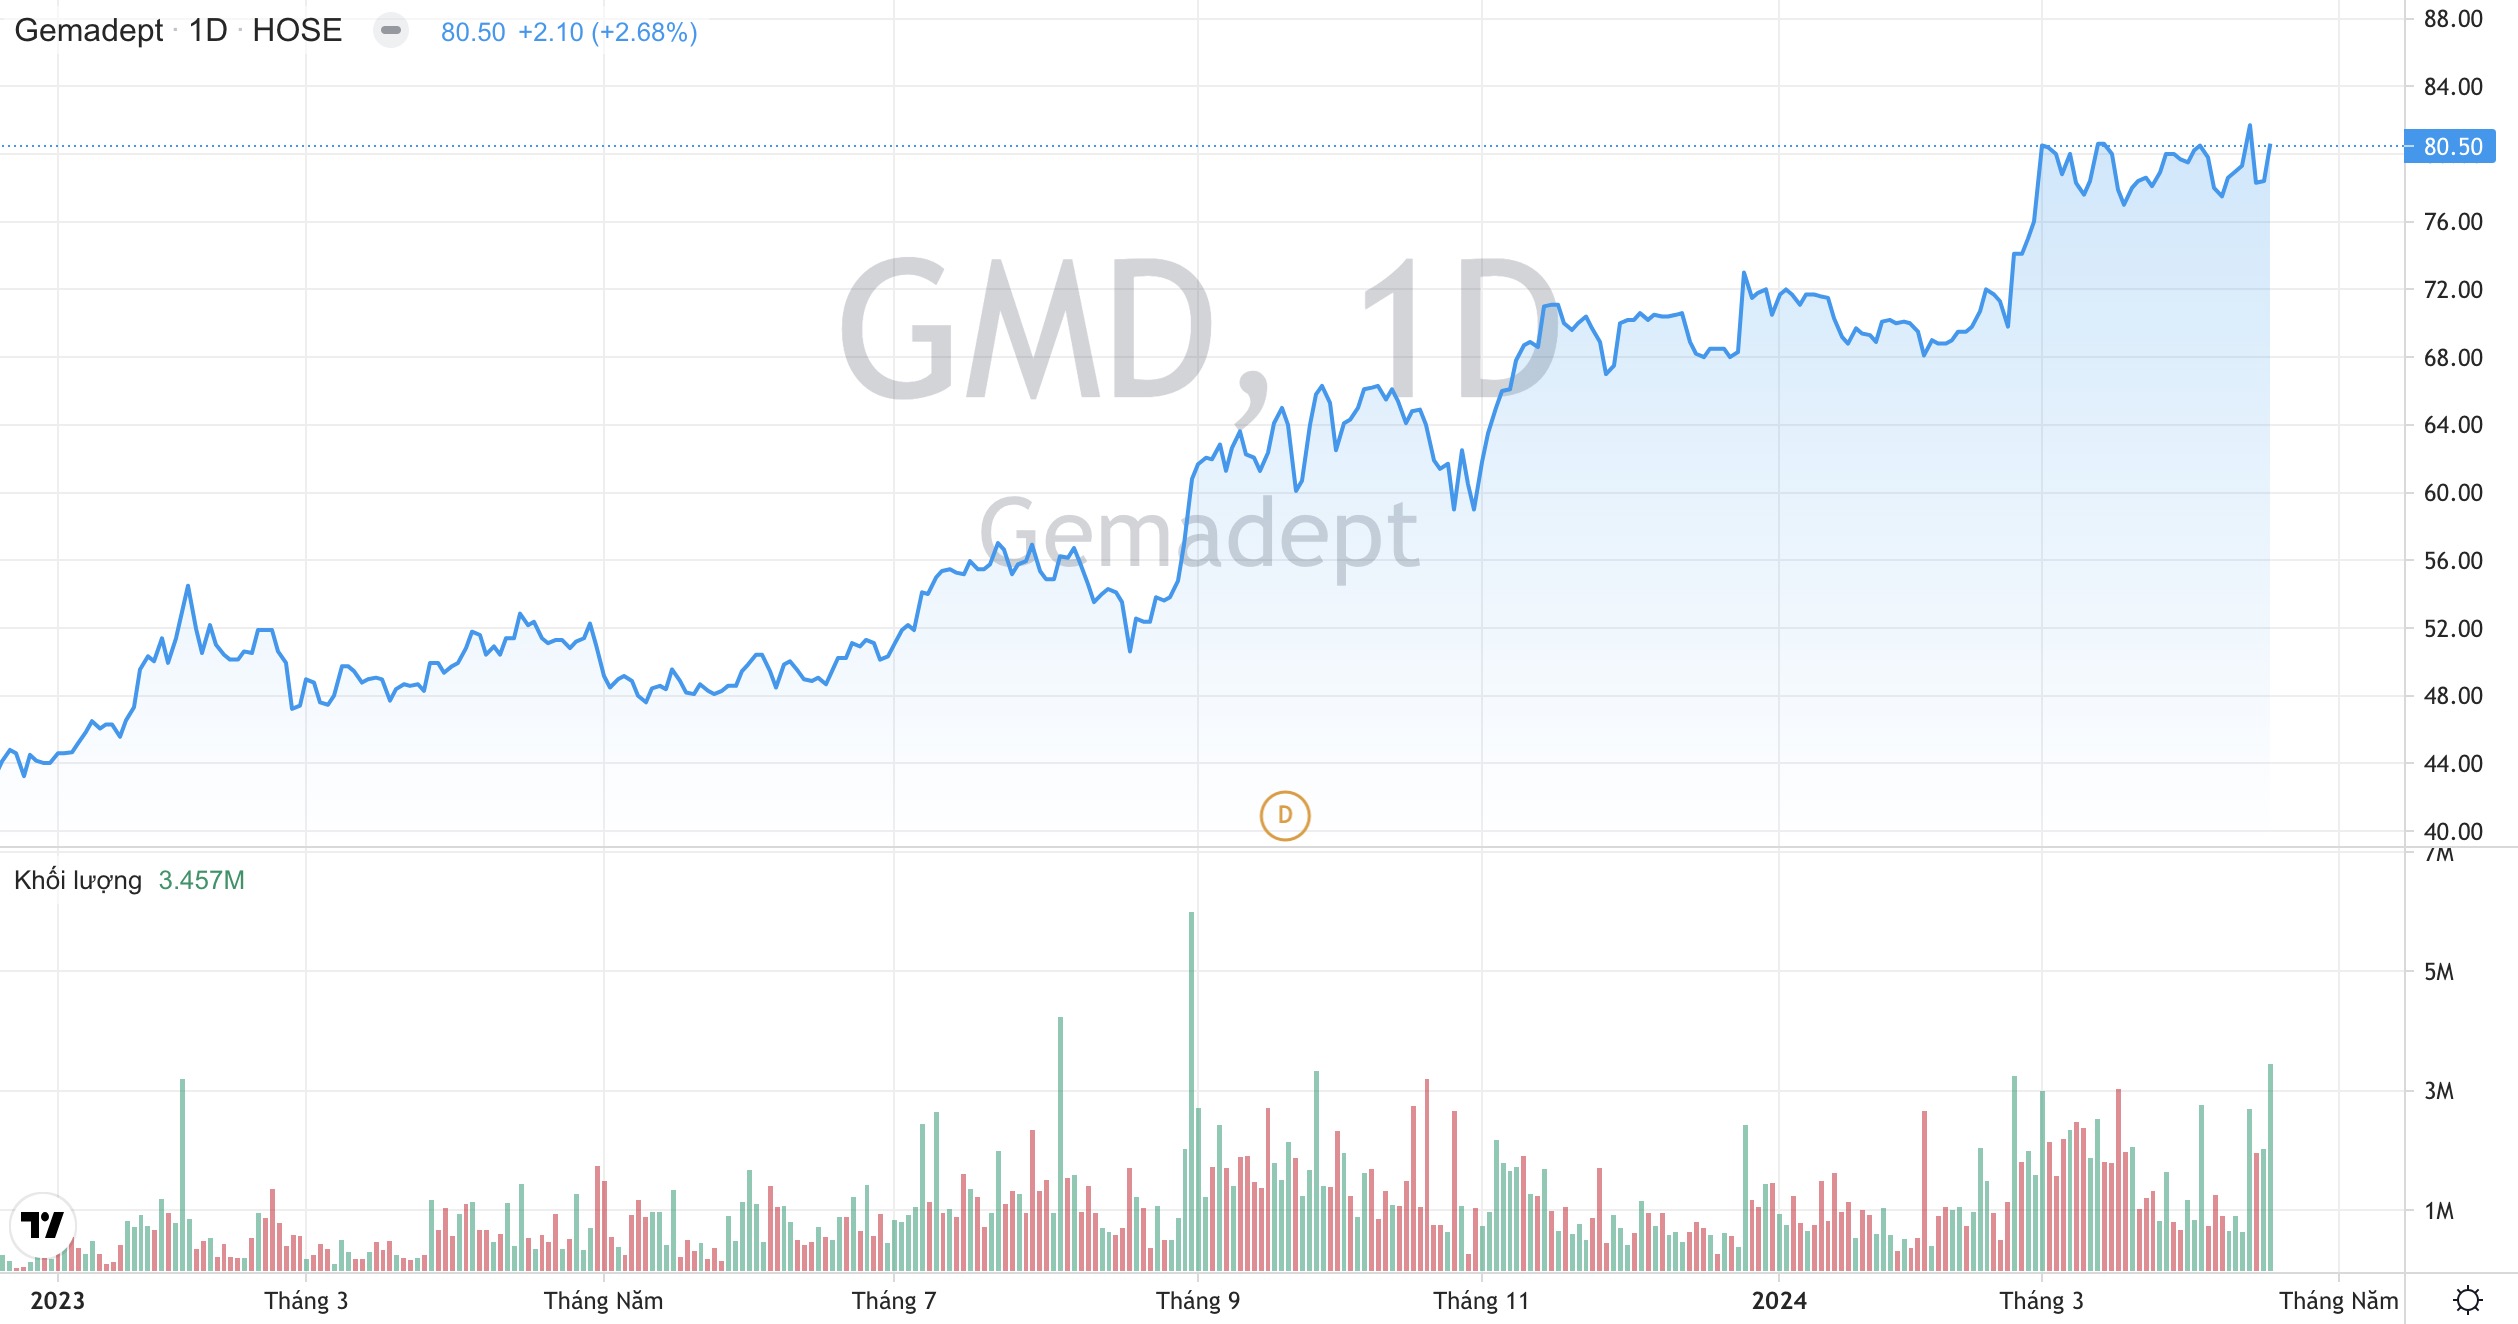 Tập đoàn Gemadept GMD hoàn tất chuyển nhượng toàn bộ vốn tại Cảng Nam Hải